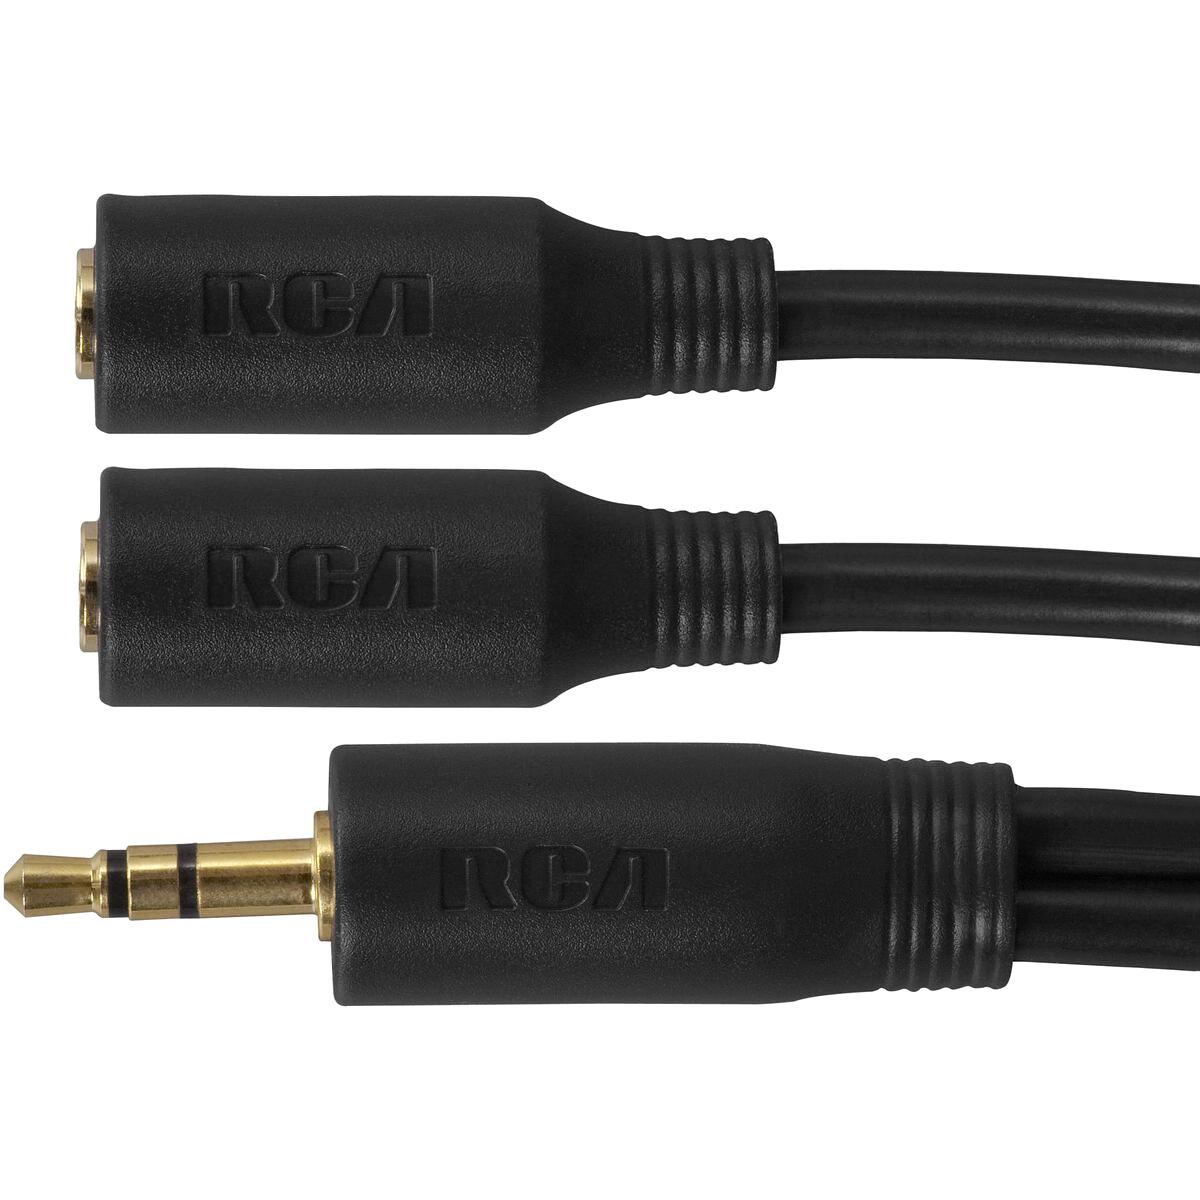 Photos - Cable (video, audio, USB) RCA AH202R 3.5mm Headphone Splitter 3" 